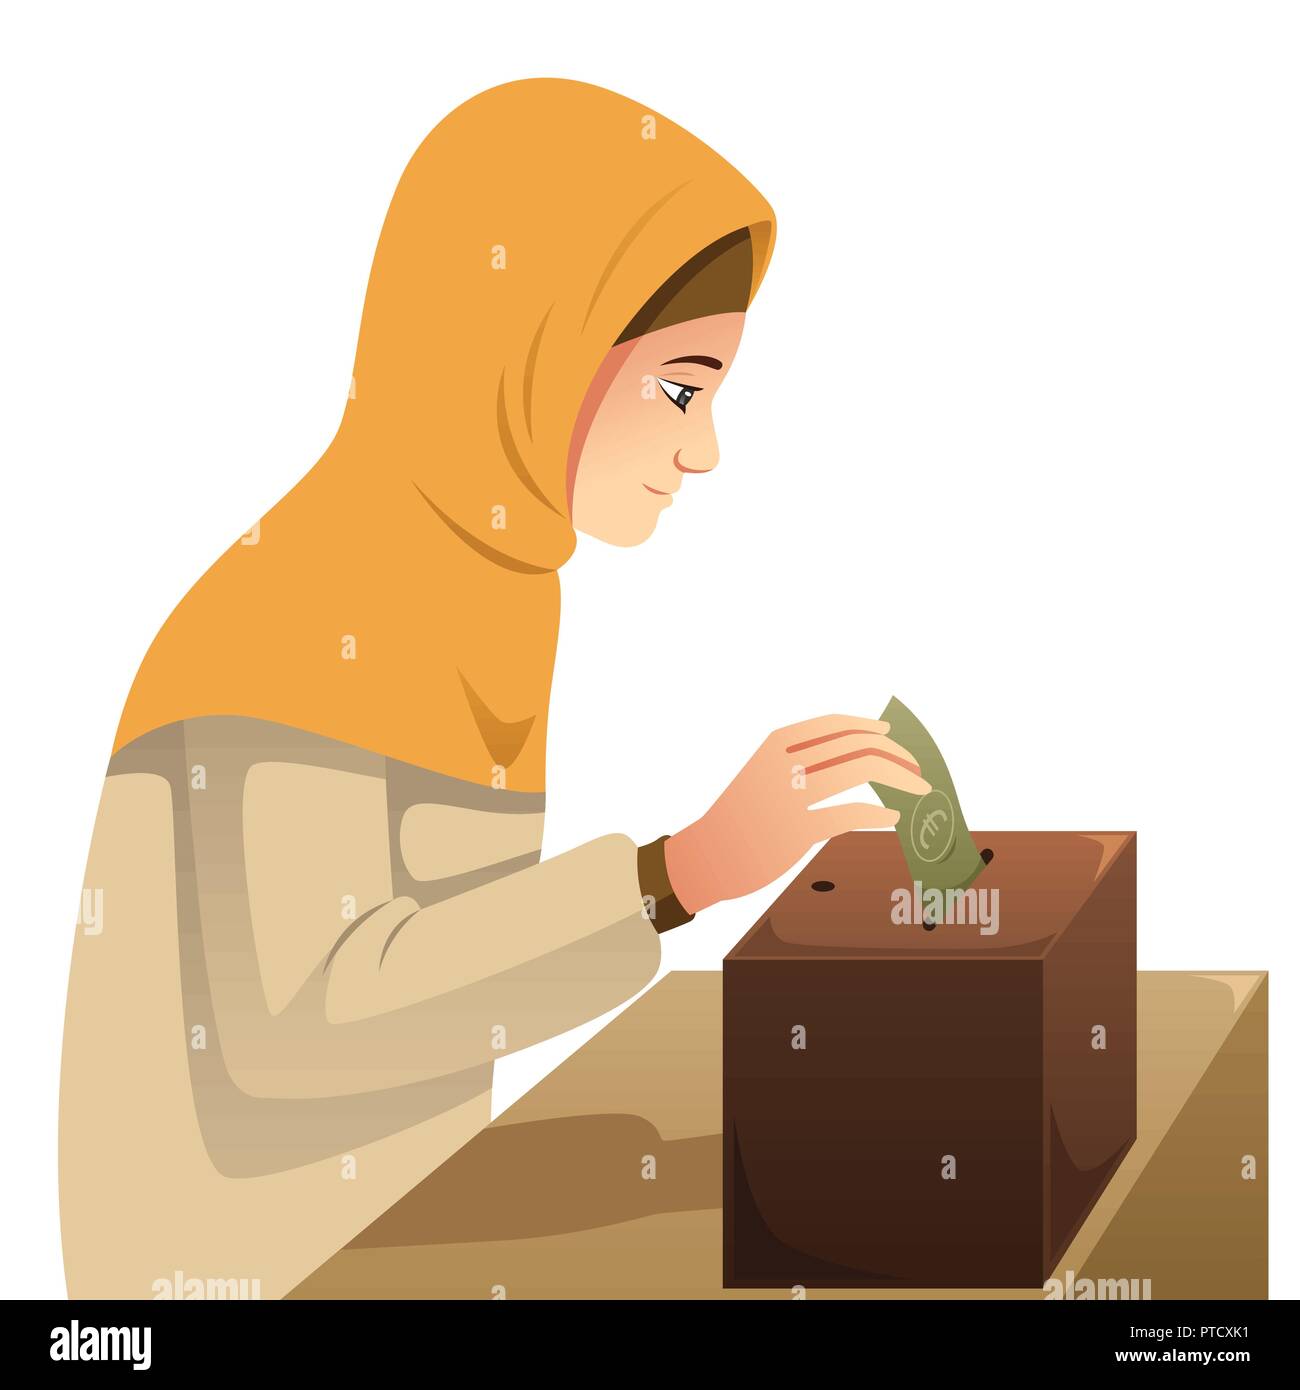 Un vecteur illustration de femme musulmane faisant l'argent Don Illustration de Vecteur